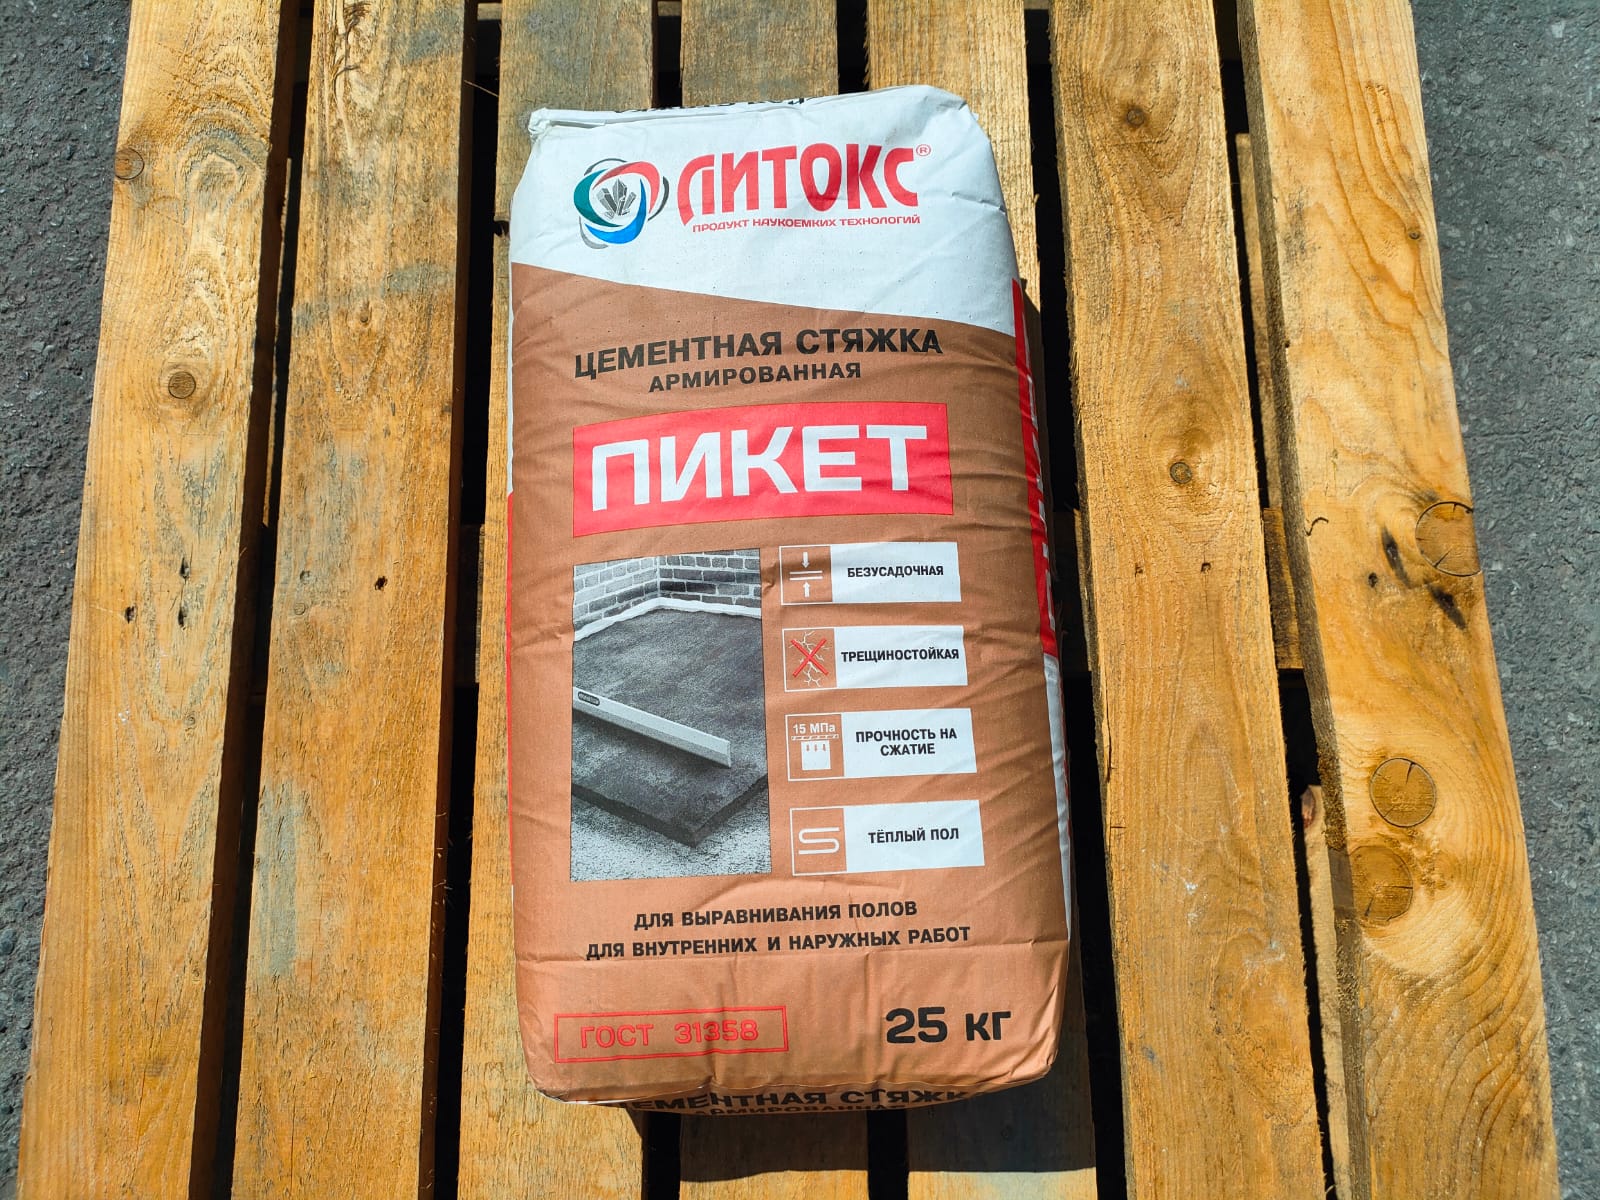 Цементная армированная стяжка для пола Литокс Пикет 25 кг								